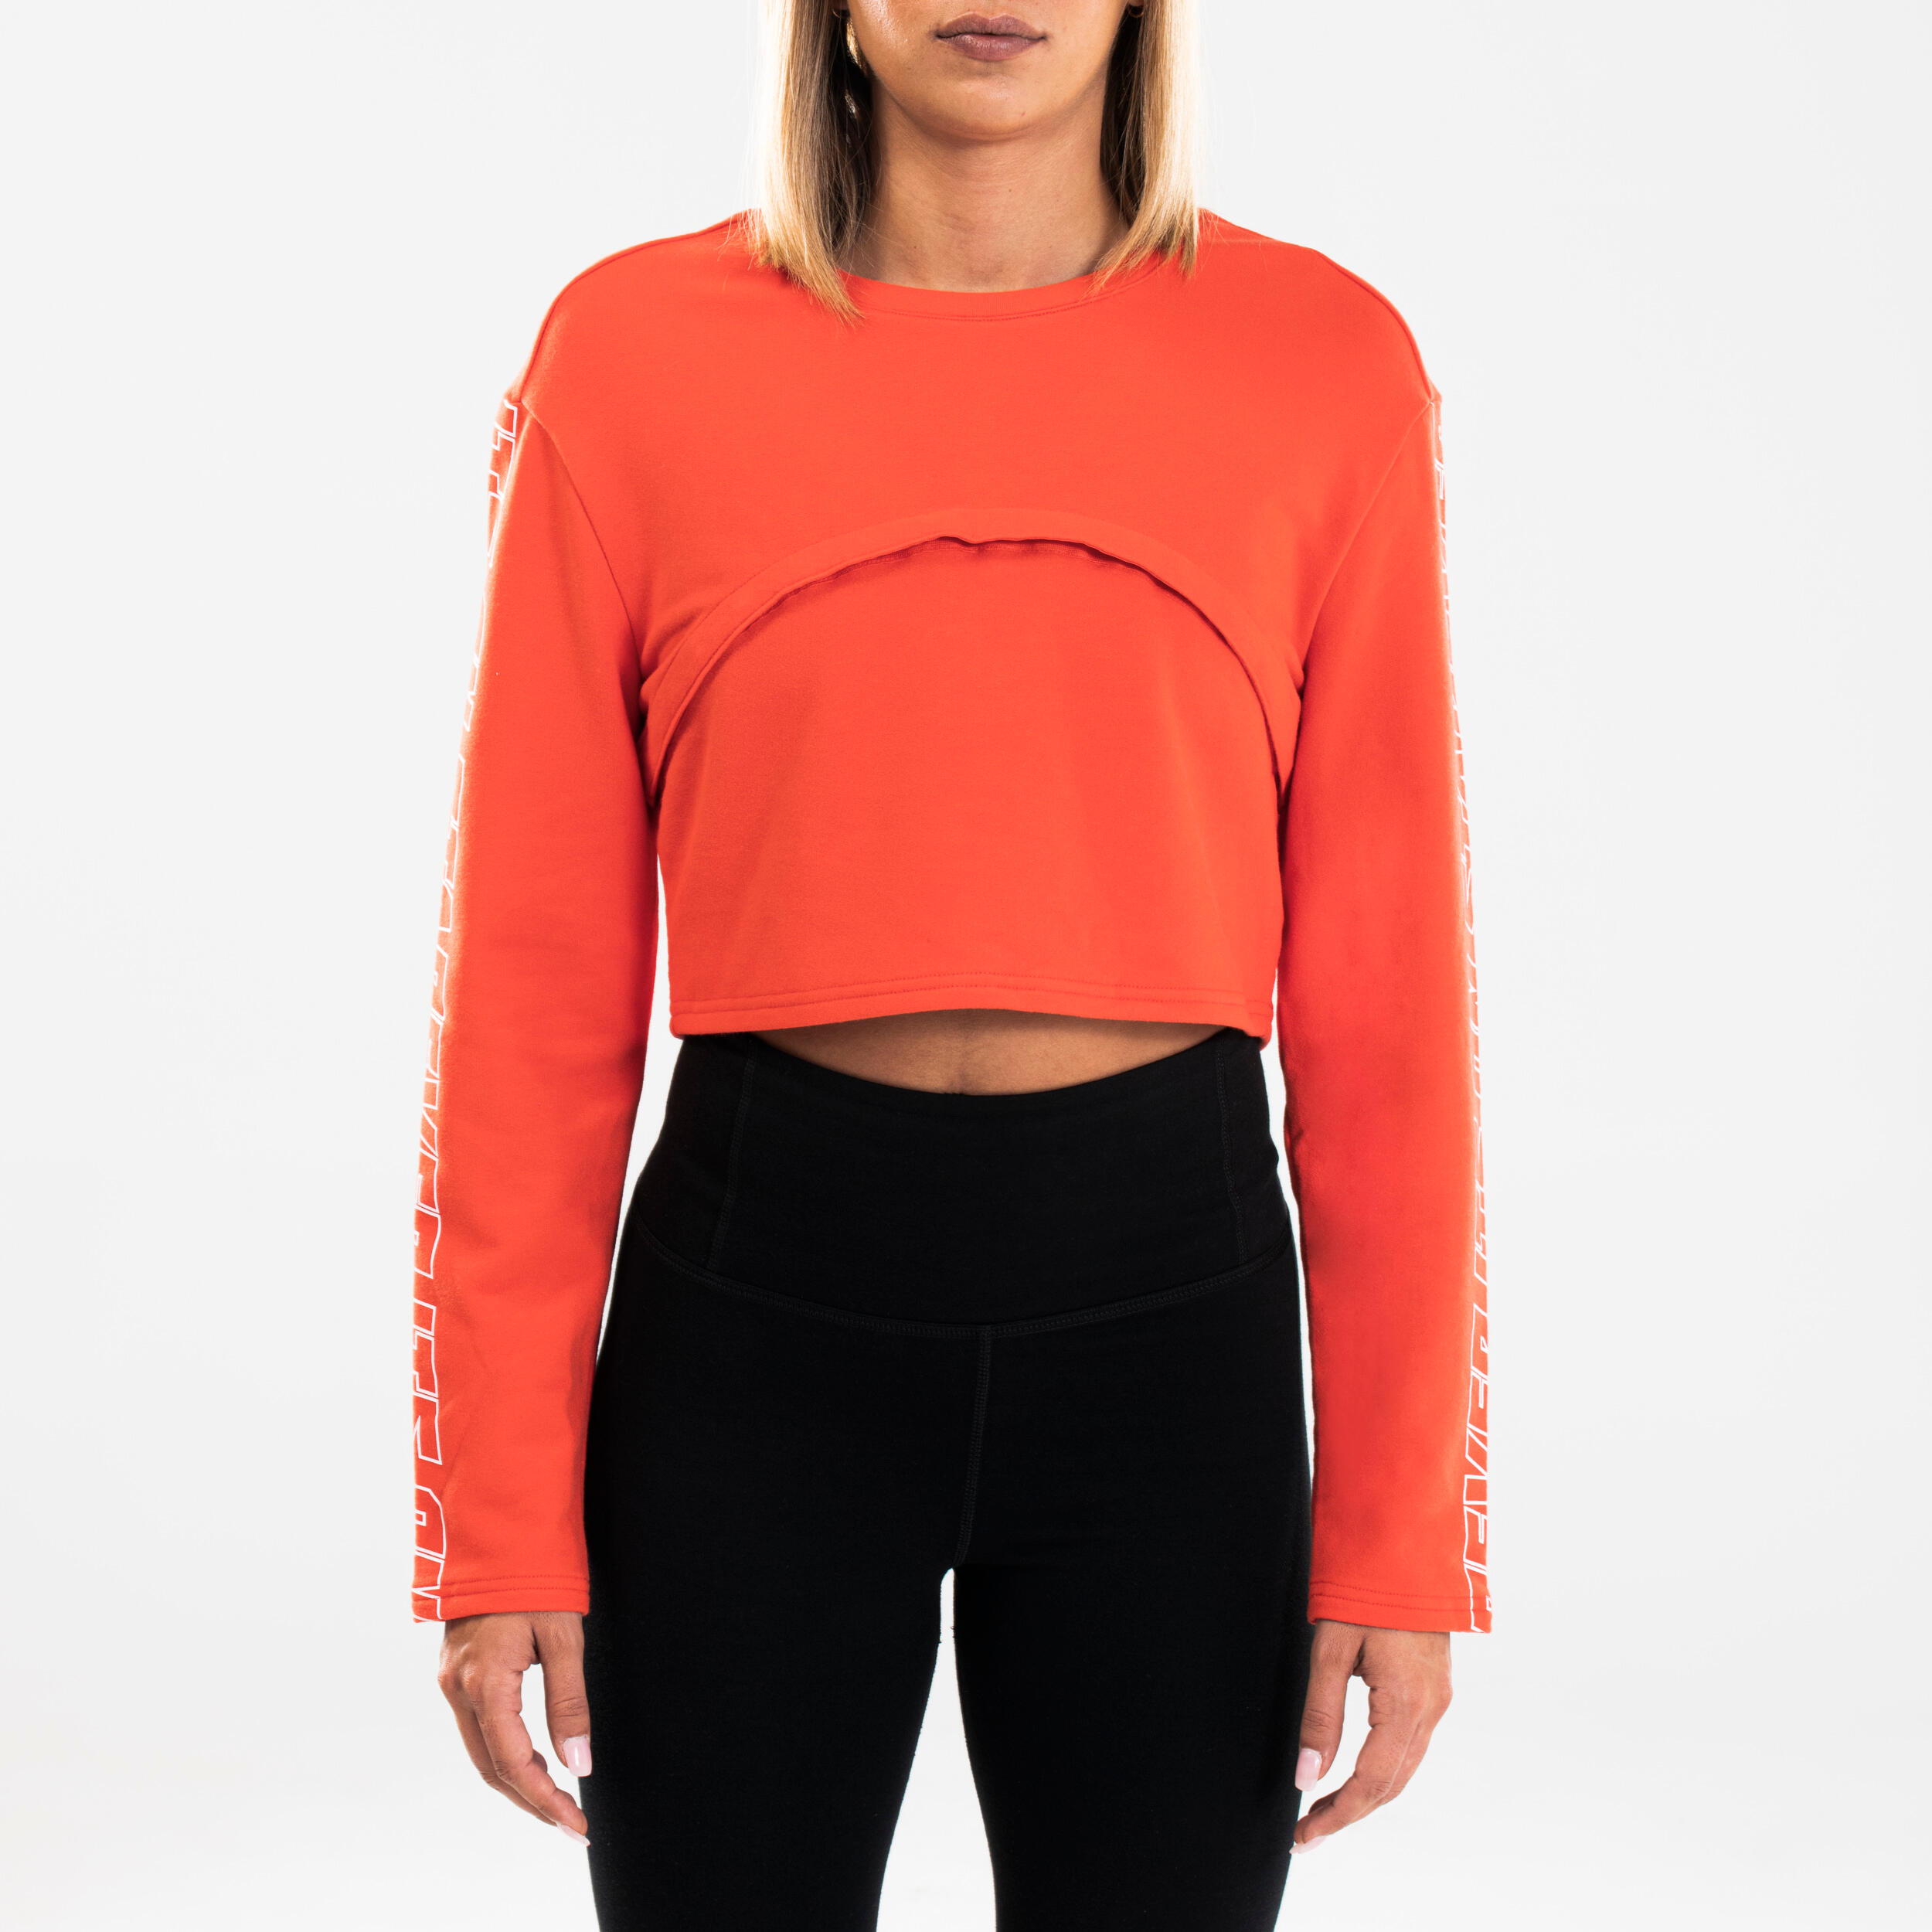 Women's Adjustable Urban Dance Sweatshirt - Red 2/8